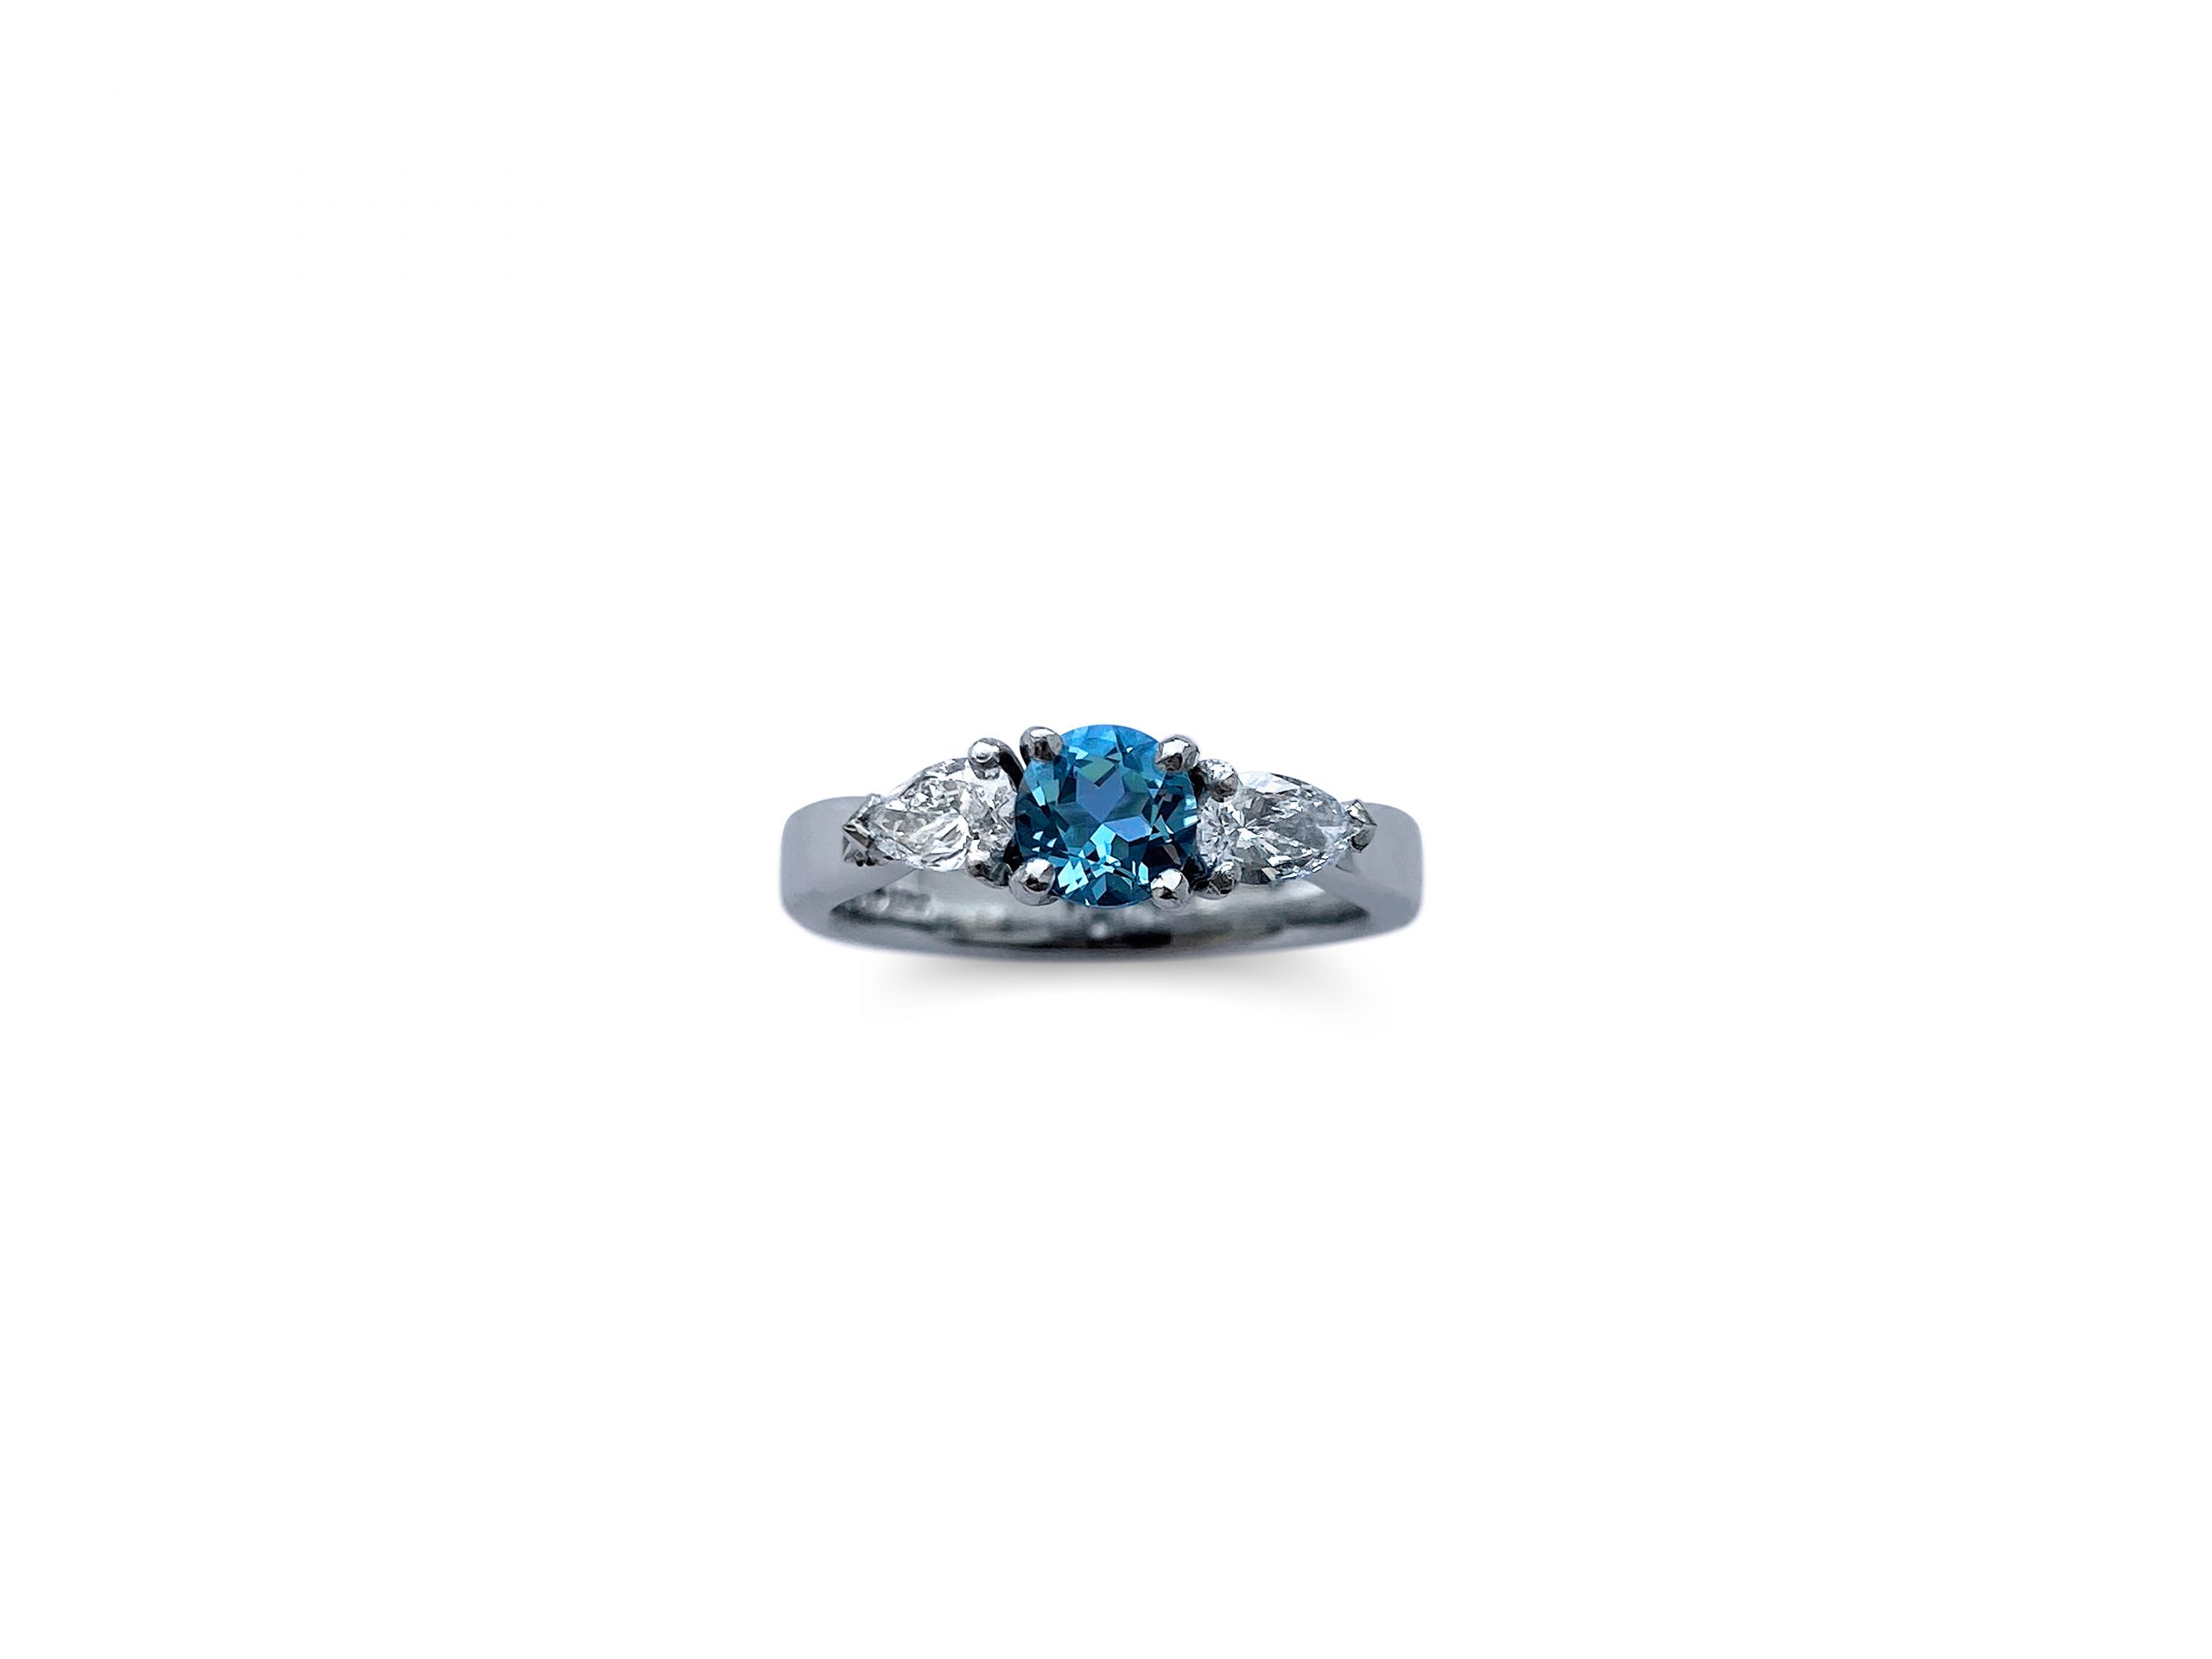 Sea & Stars Paopu Fruit Inspired Engagement Ring | Takayas Custom Jewelry